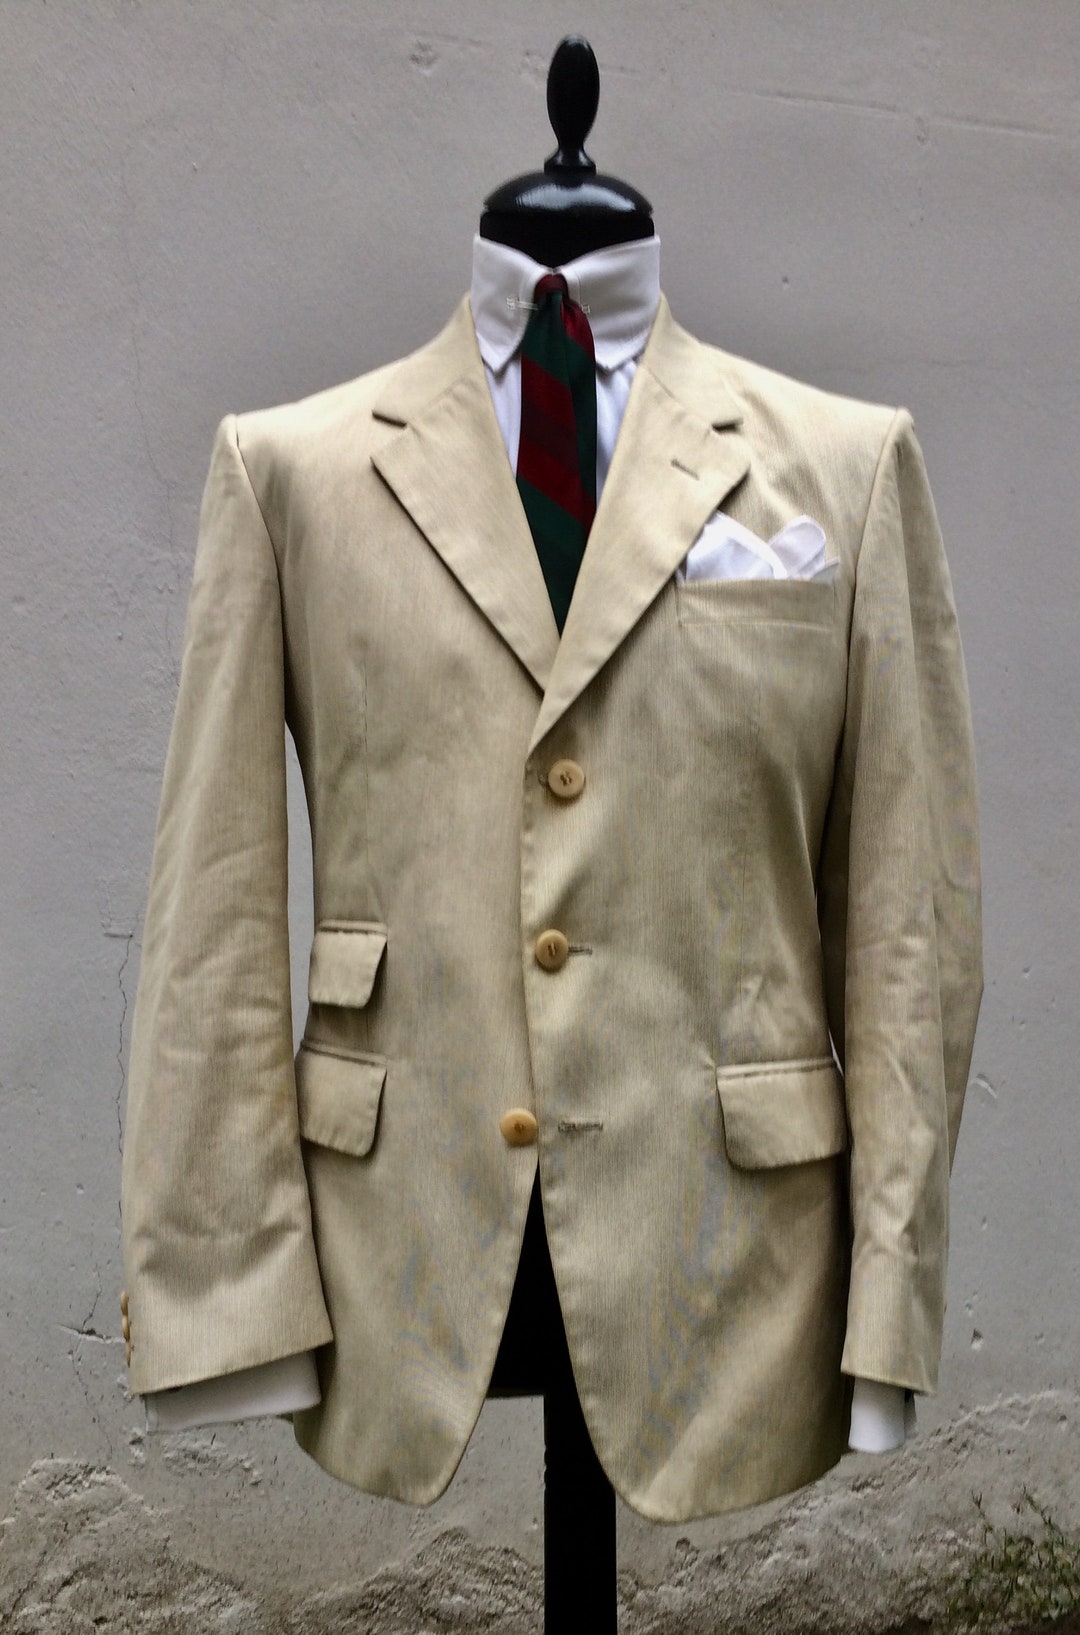 John G Hardy 60s Style Jacket - Etsy